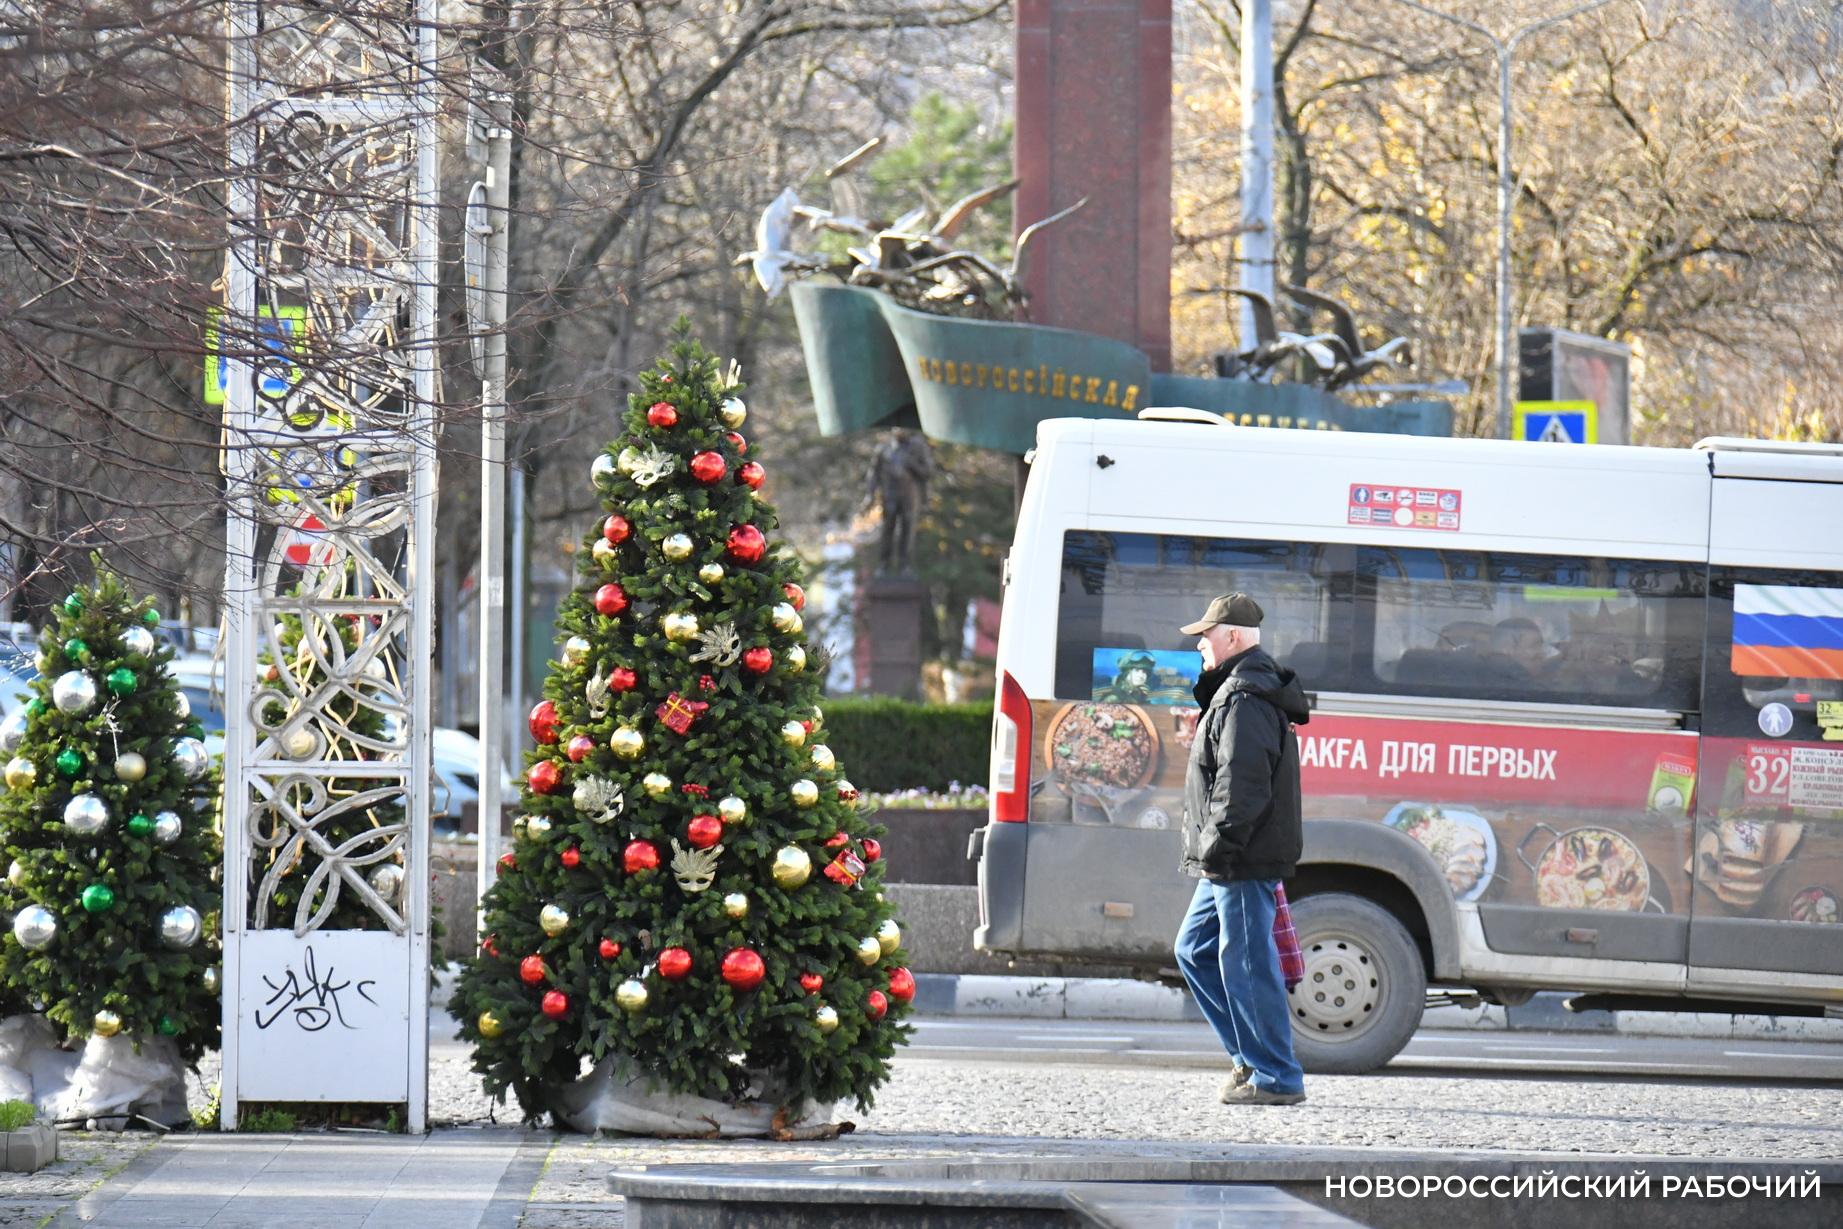  Общественный транспорт Новороссийска будет работать в новогоднюю ночь. Но недолго